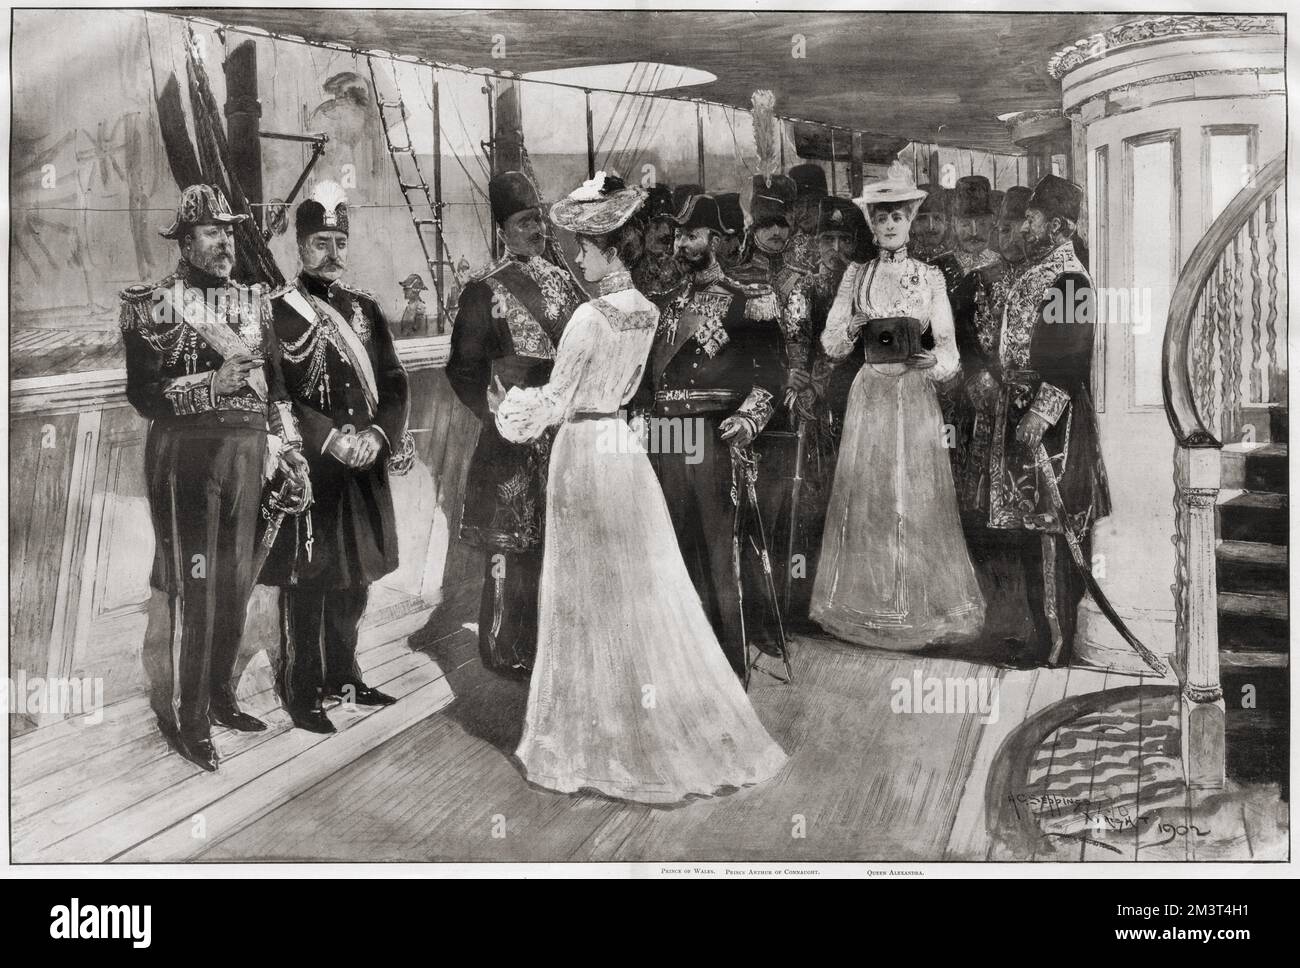 Besuch von Muzaffir-ed-DIN (Mozaffar ad-DIN Shah Qajar), Schah von Persien, bei König Edward VII in Portsmouth am 20. August 1902: Prinzessin Victoria fotografiert den König und den Schah an Bord der königlichen Yacht. Königin Alexandra wird auch mit ihrer Kamera gezeigt. Stockfoto